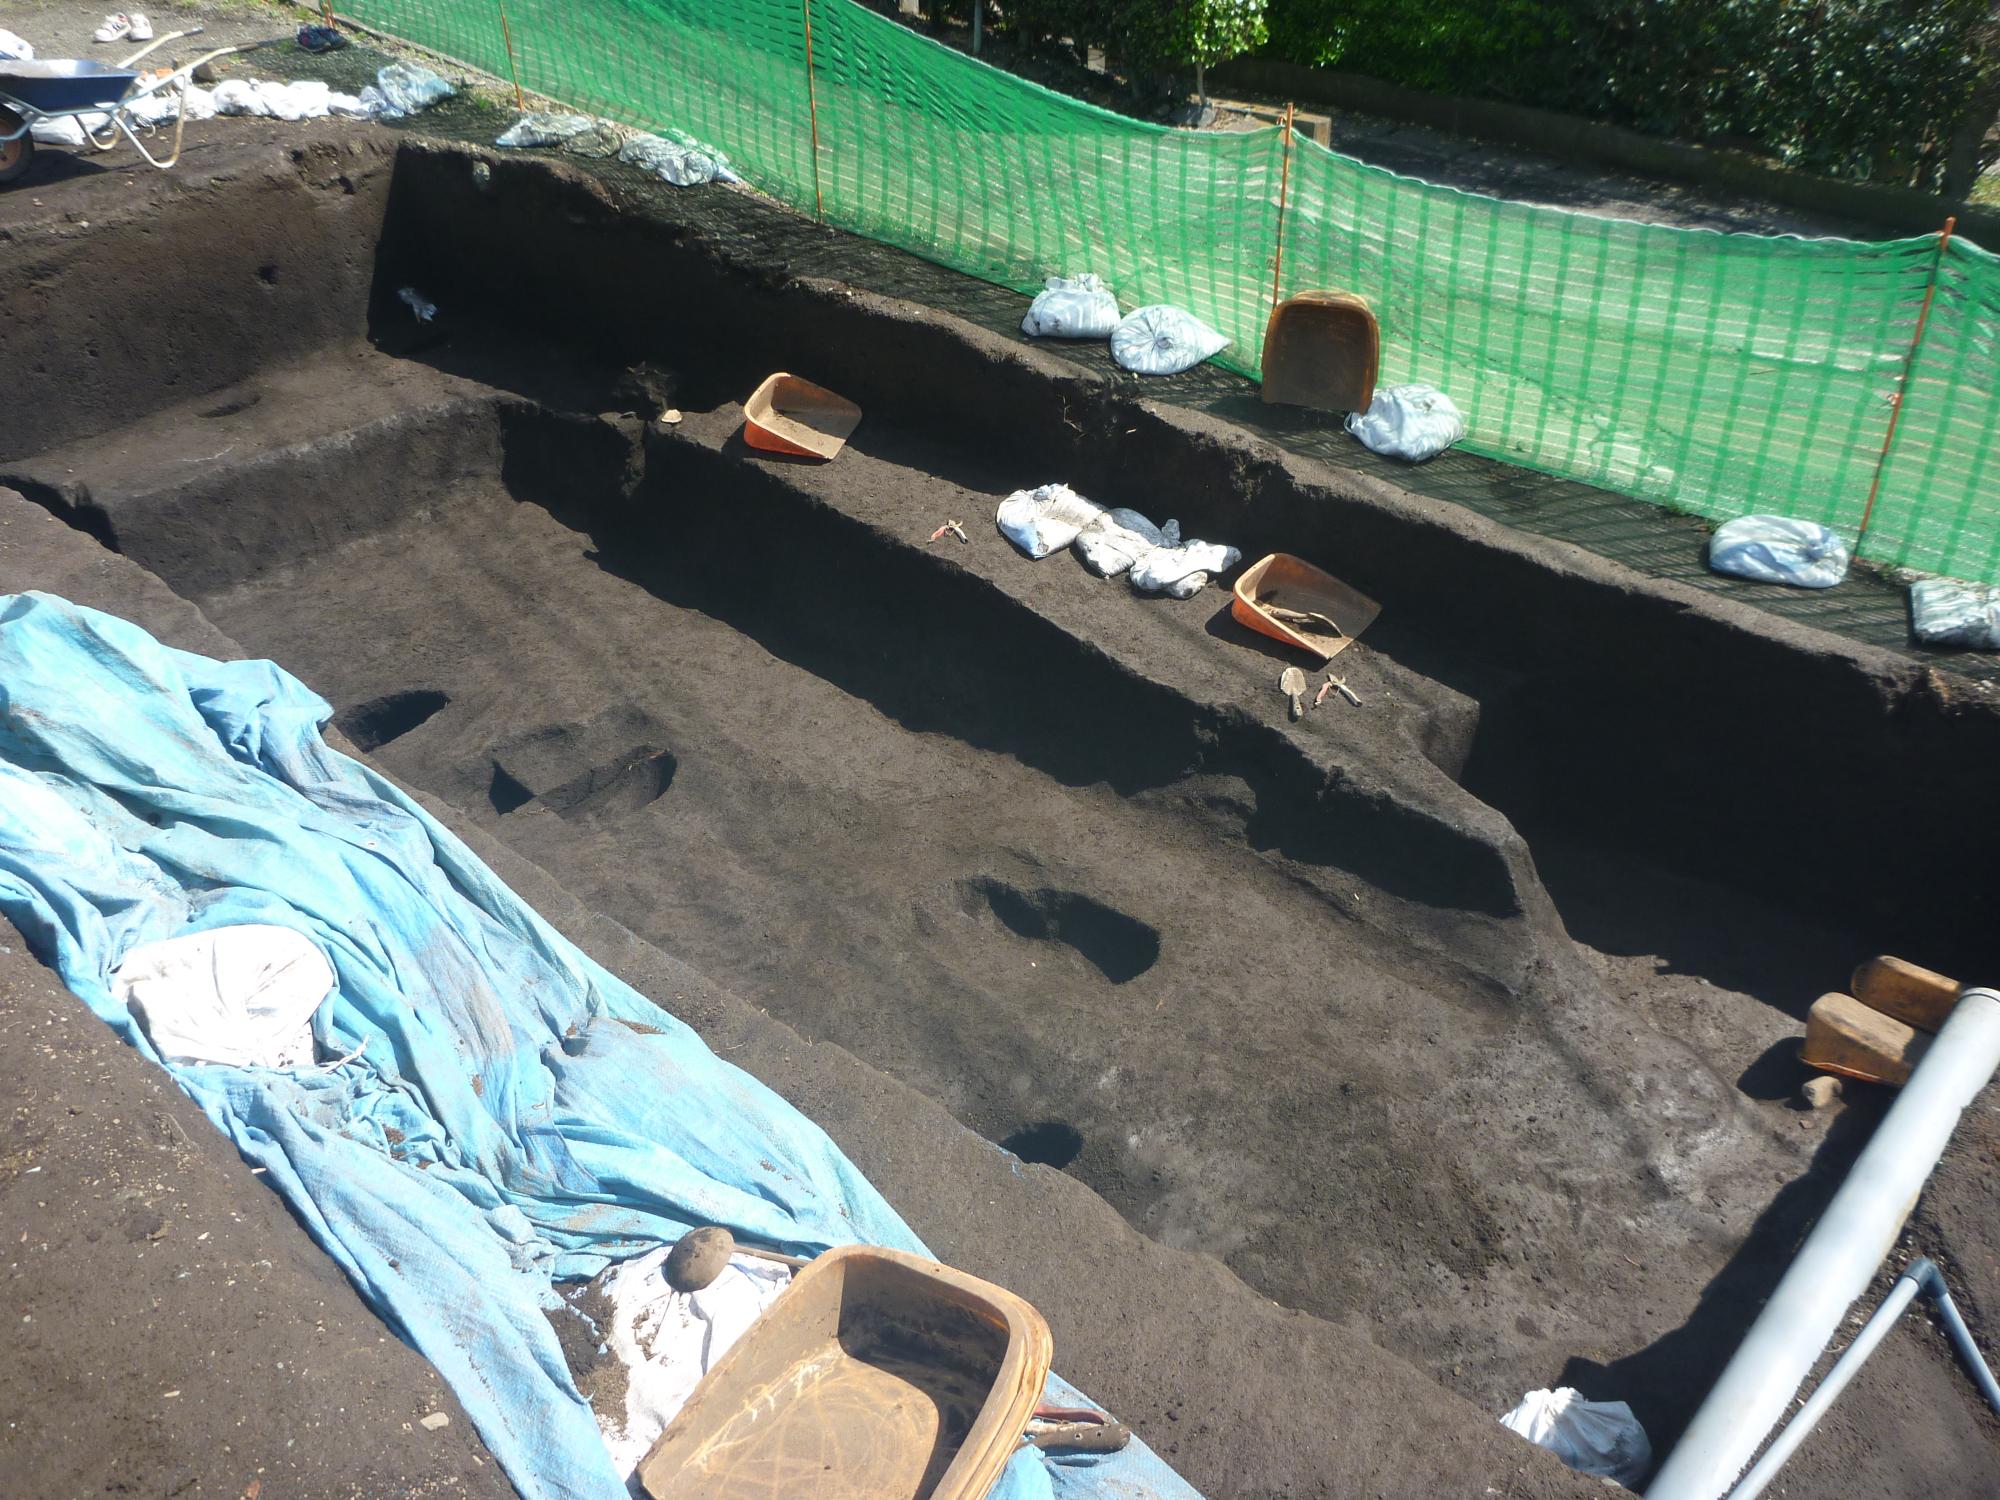 発掘調査によって竪穴住居の一部が検出している様子。